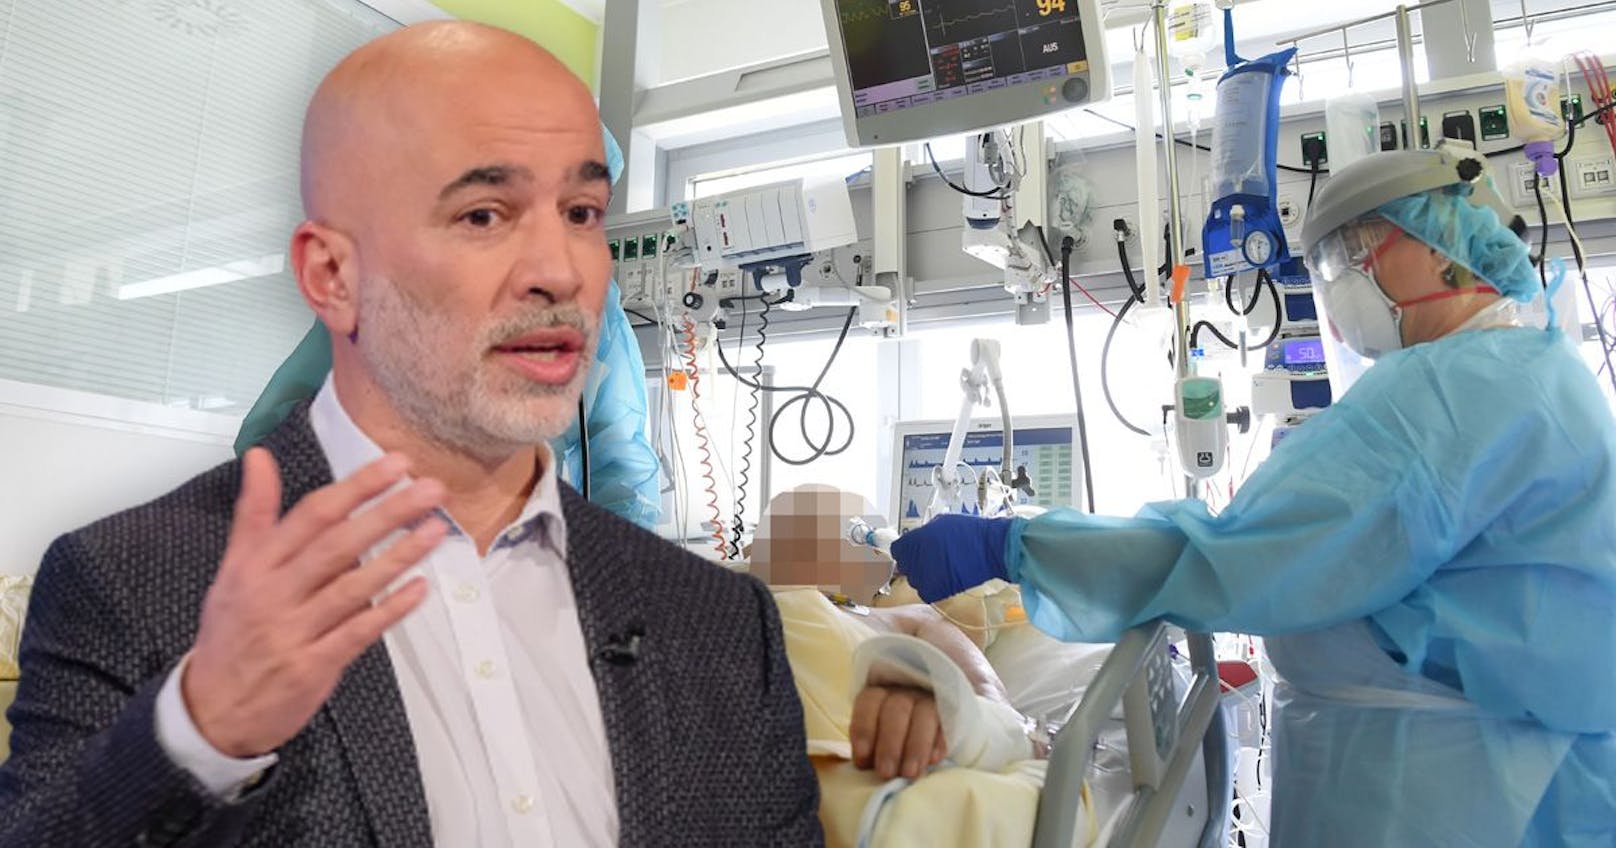 Lungenfacharzt und Leiter der Covid-Station in der Klinik Floridsdorf Arschang Valipour befürchtet wieder eine Verschiebung von Eingriffen aufgrund der vielen Covid-Patienten.